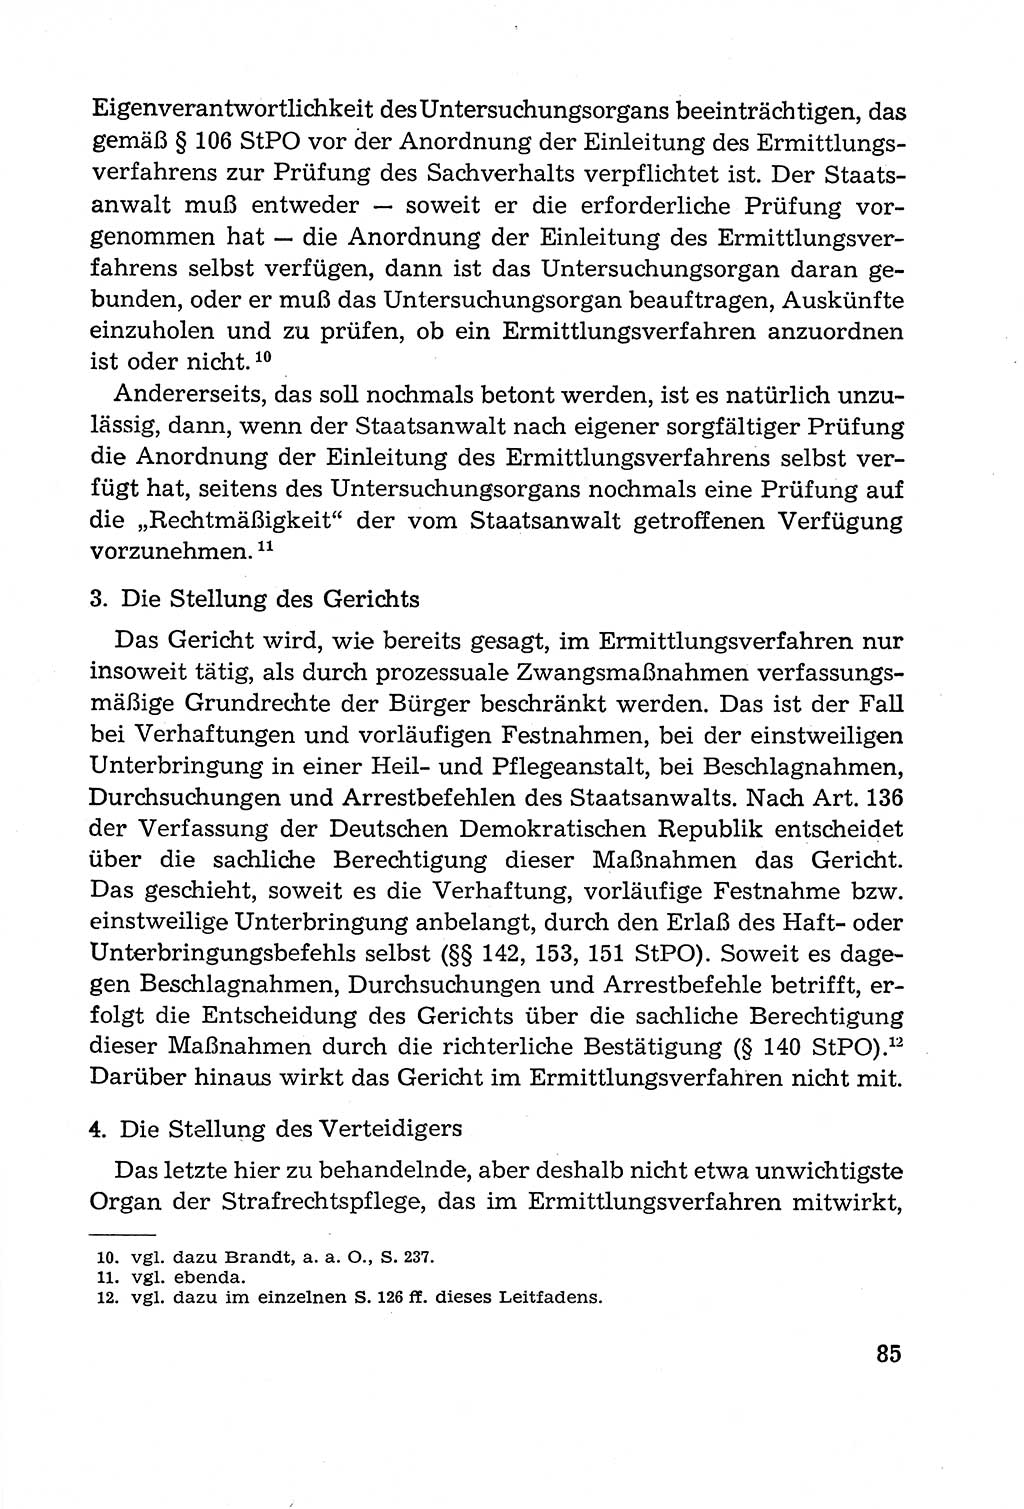 Leitfaden des Strafprozeßrechts der Deutschen Demokratischen Republik (DDR) 1959, Seite 85 (LF StPR DDR 1959, S. 85)